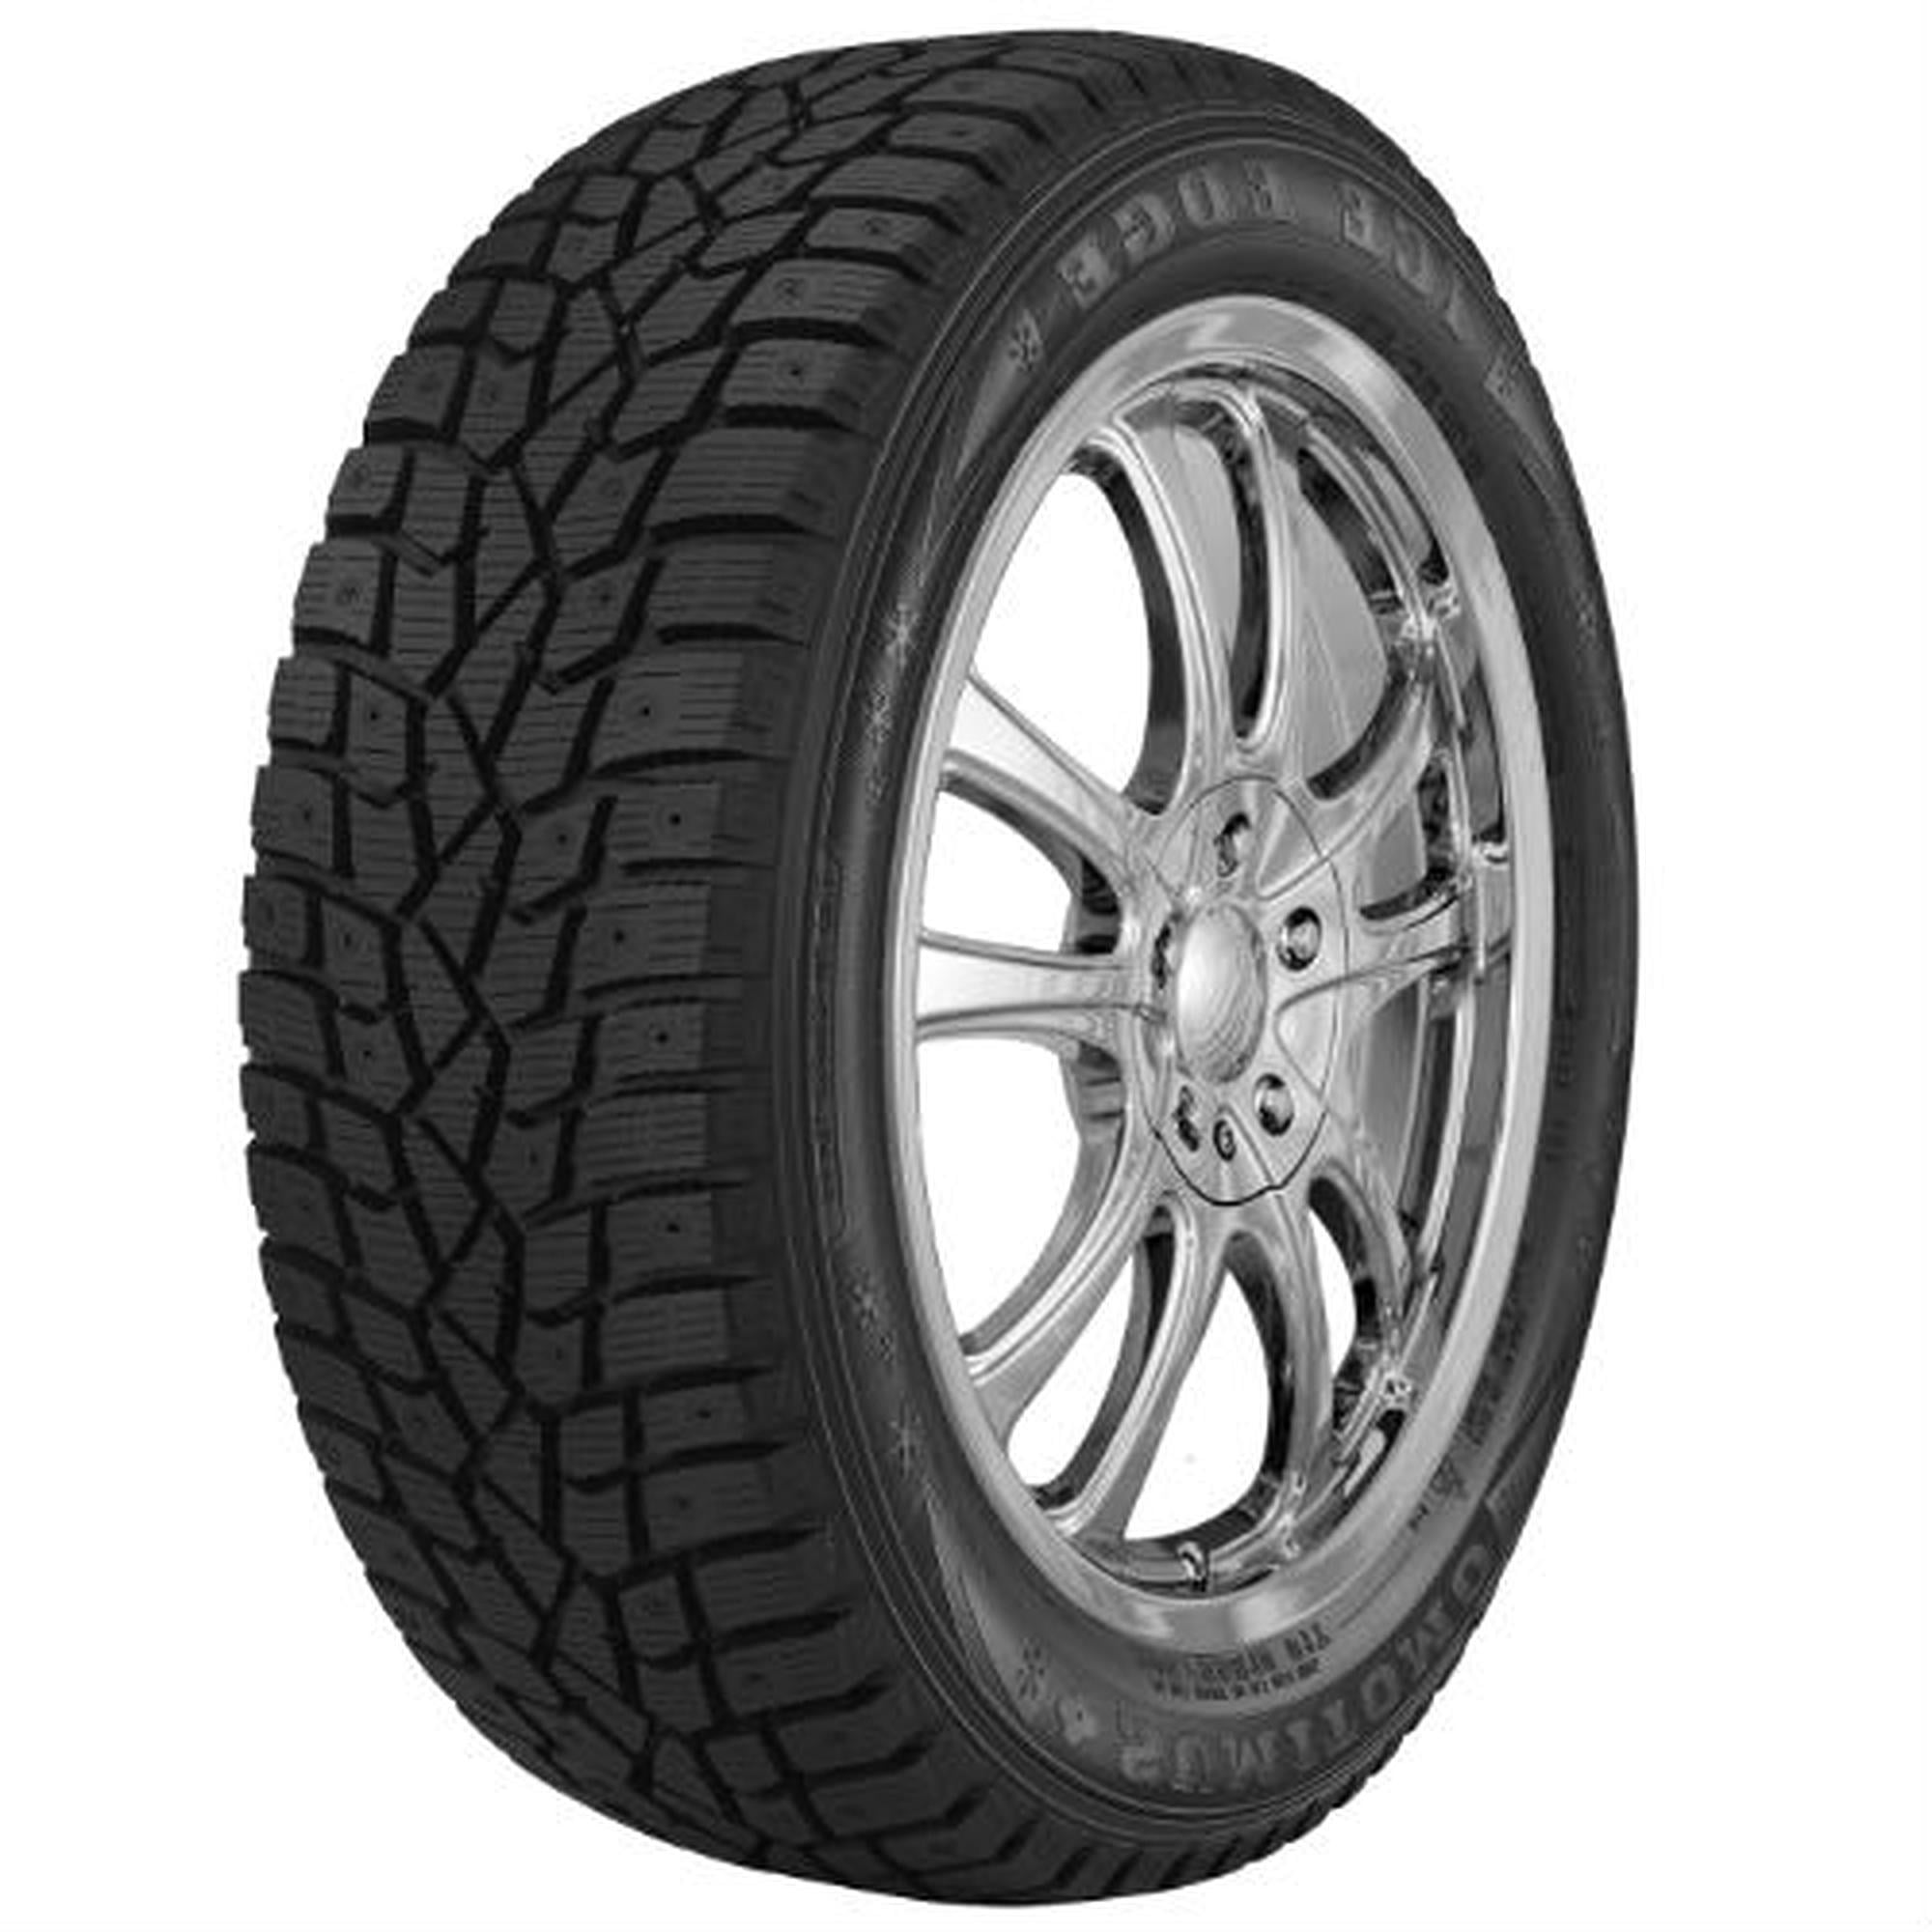 Dunlop Winter Maxx 185/65R15 88T Tire (Studless) Snow